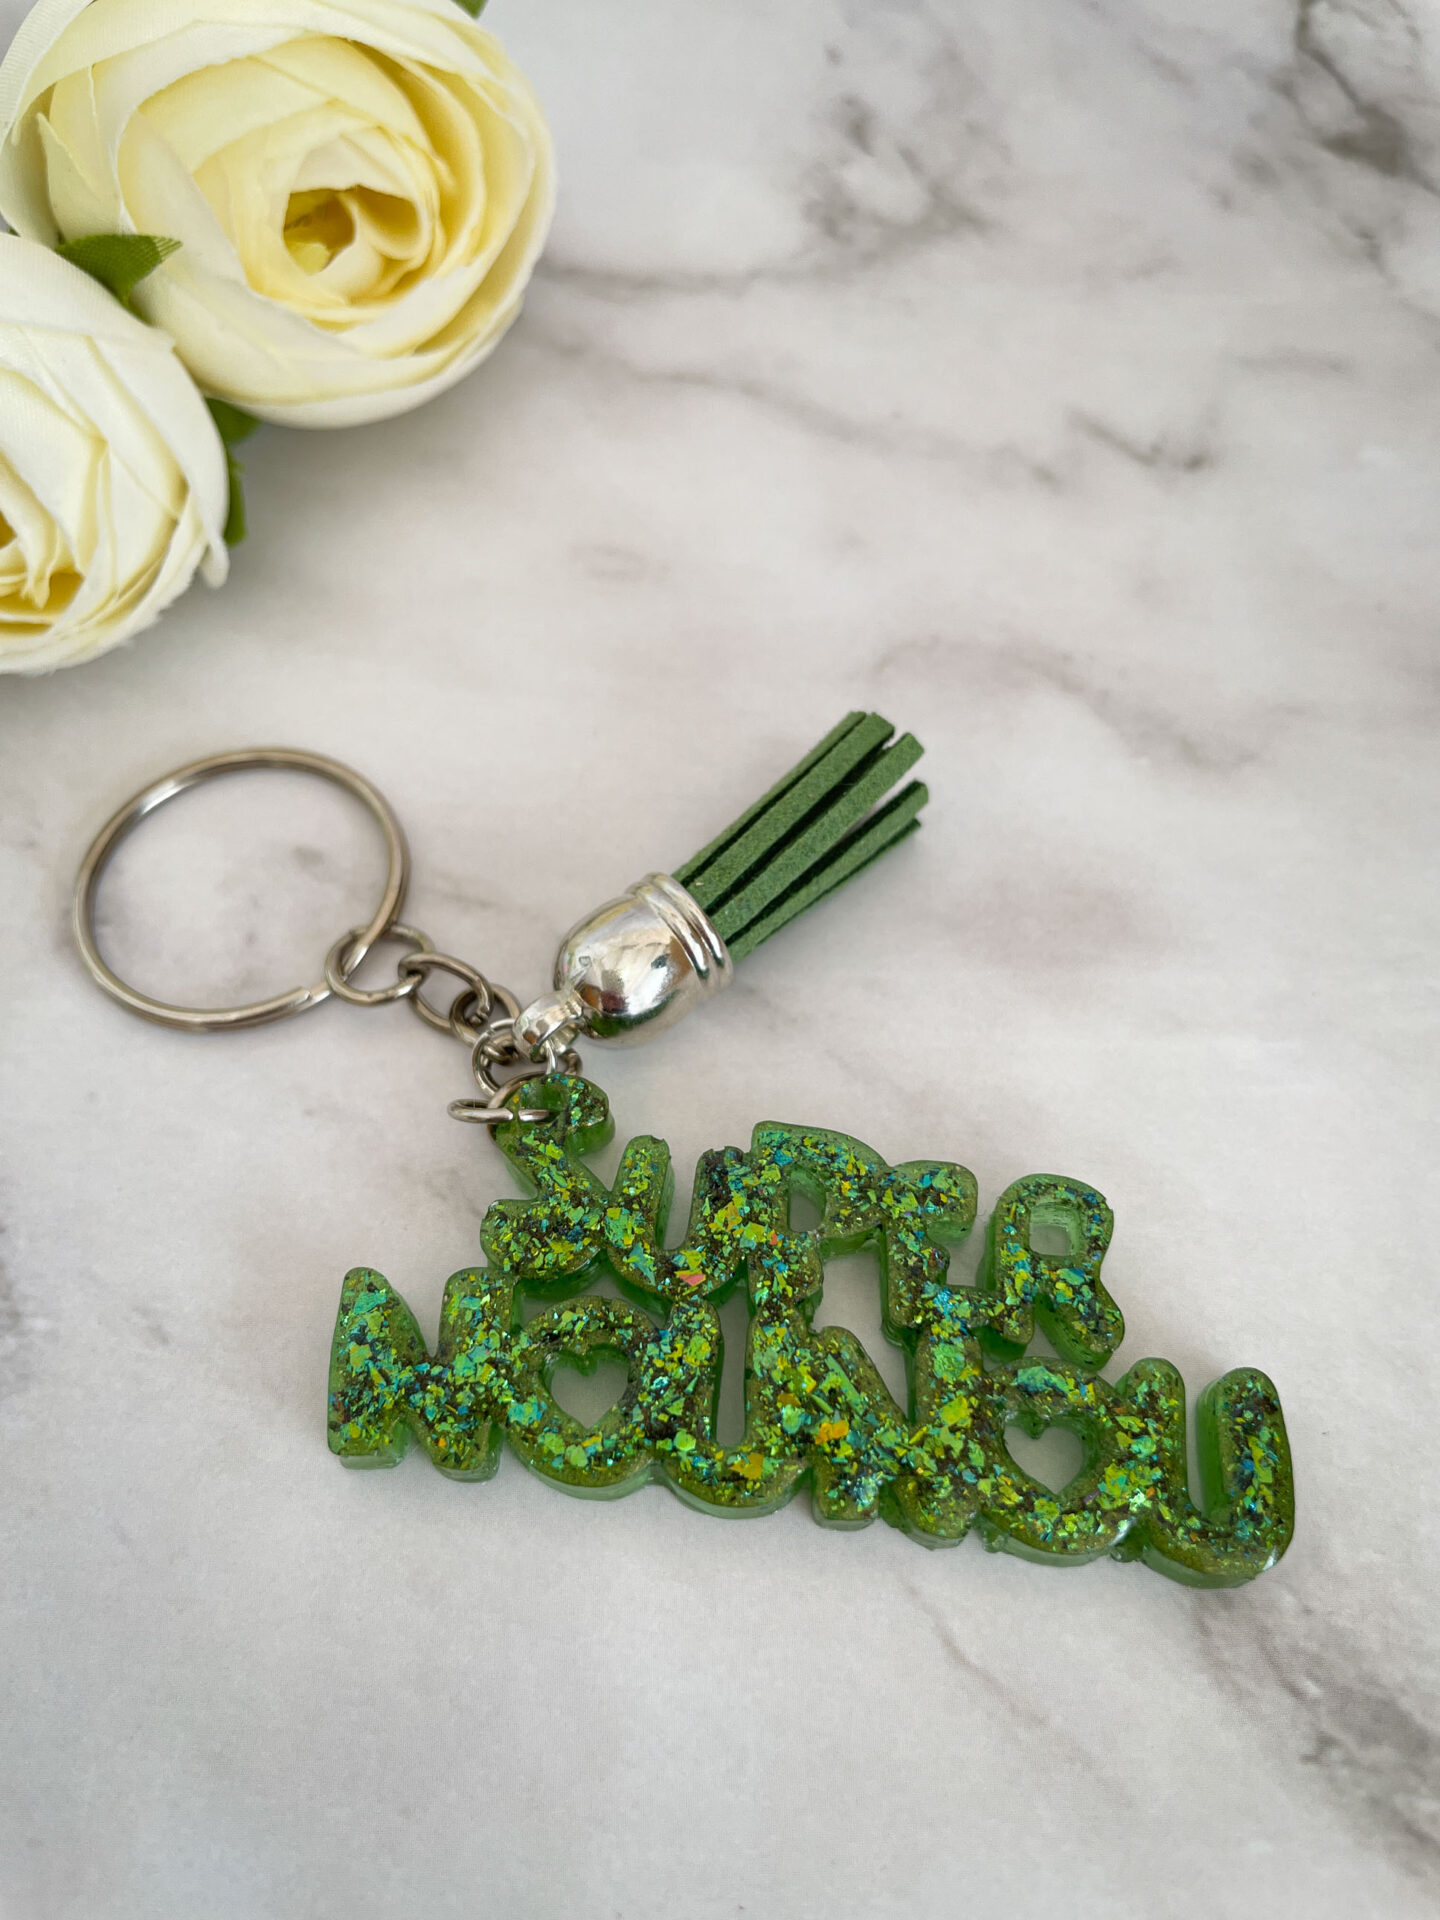 Porte clé mot - Super nounou vert paillette - Boutique en ligne d'idées cadeau et de décoration